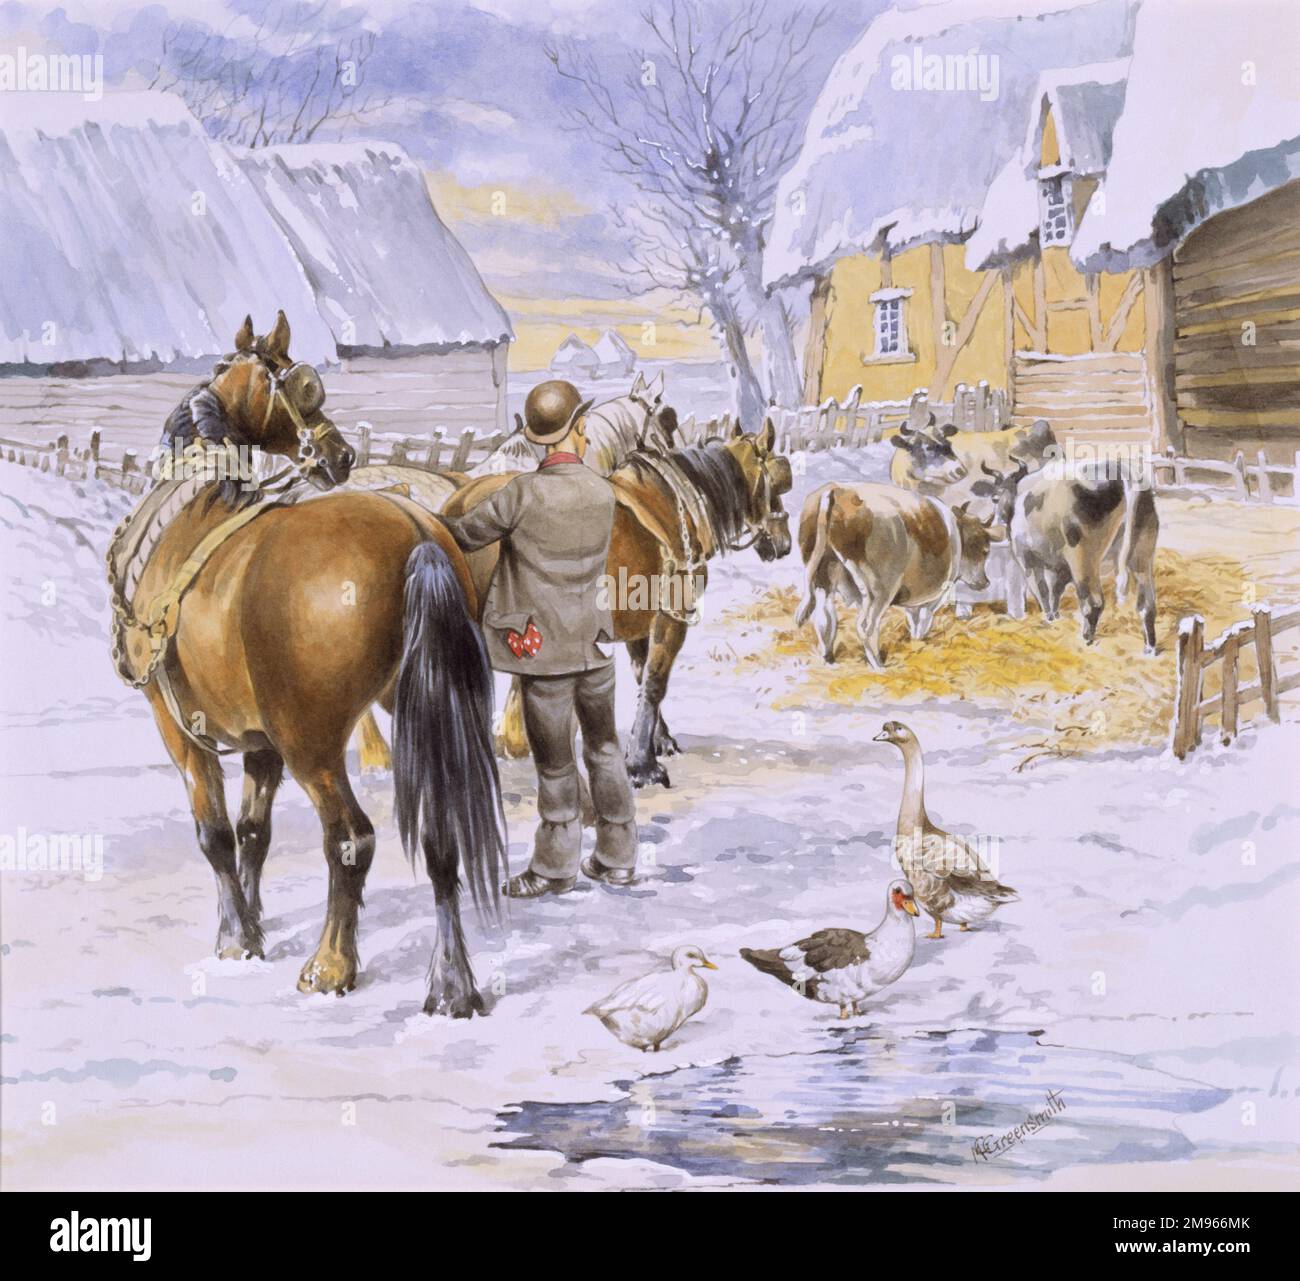 Une scène de cour de ferme en hiver, avec un agriculteur qui vérifie le virement sur une équipe de quatre chevaux en activité, tandis que les canards, les oies et les vaches boivent et se nourrissent dans la cour. Peinture aquarelle par Malcolm Greensmith Banque D'Images